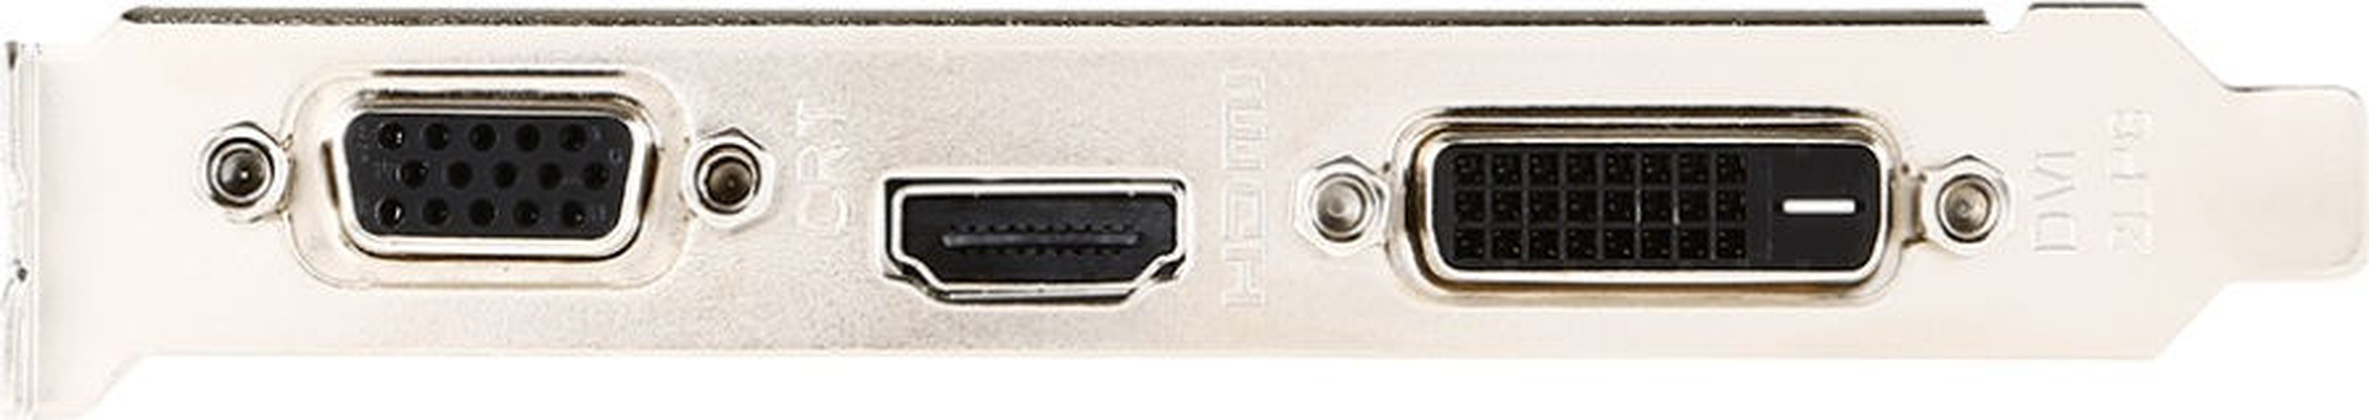 Видеокарта GT 710 MSI